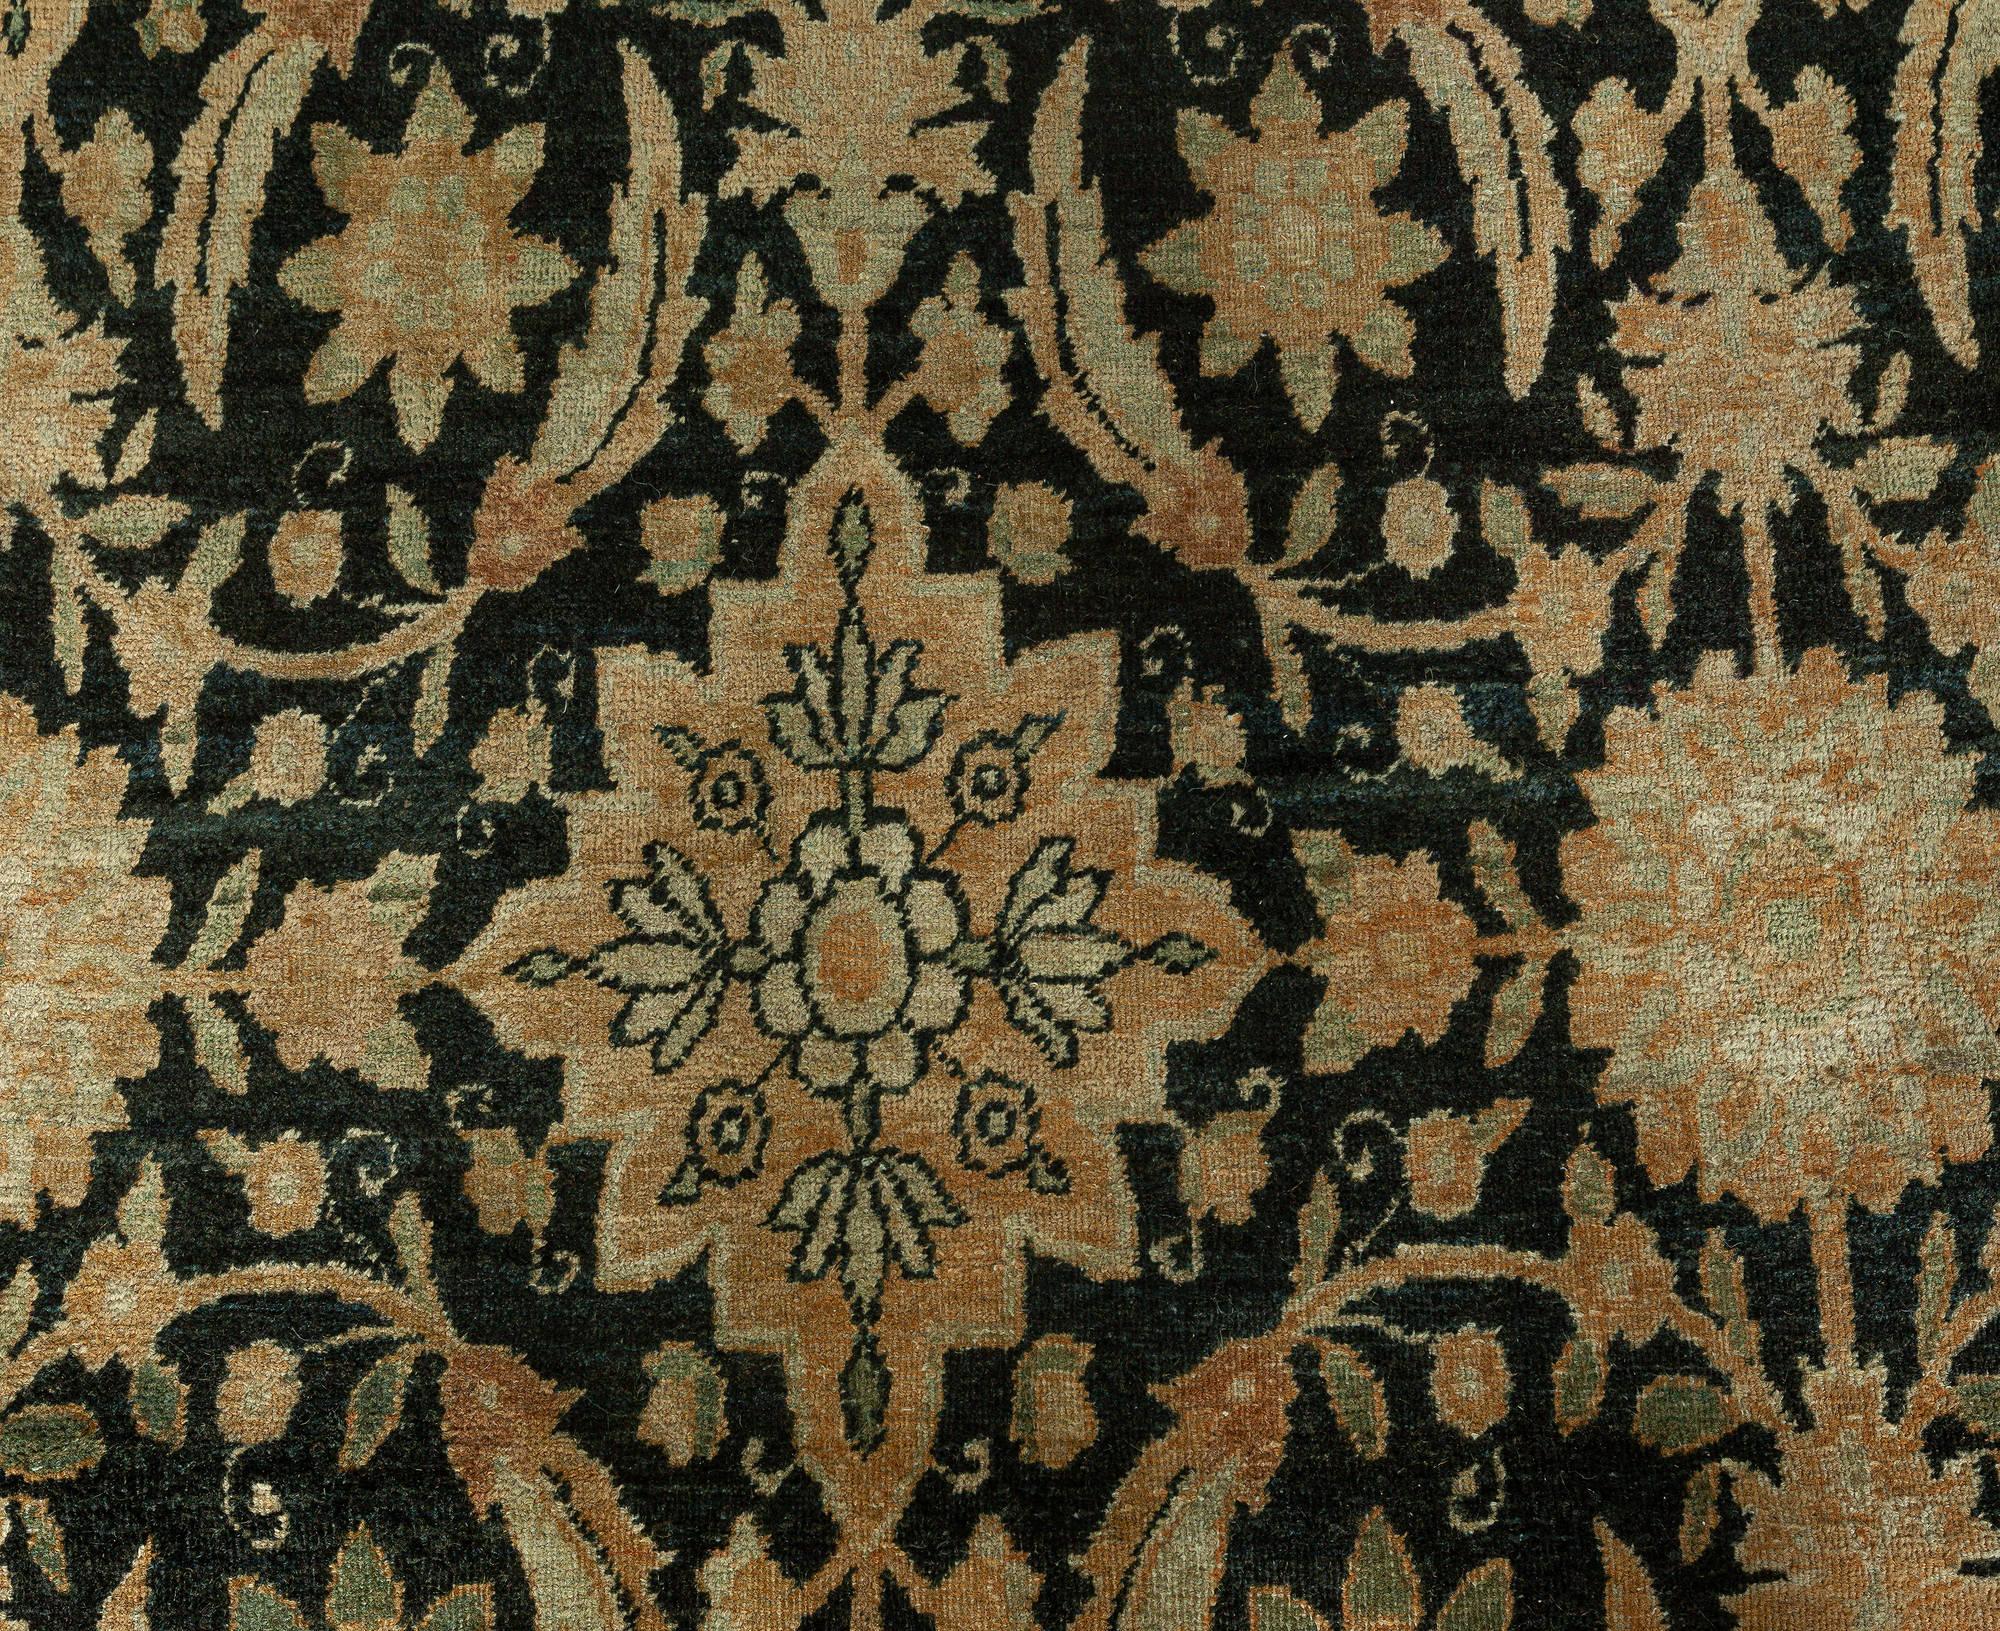 Antique Persian Kirman botanic handmade wool carpet
Size: 11'0